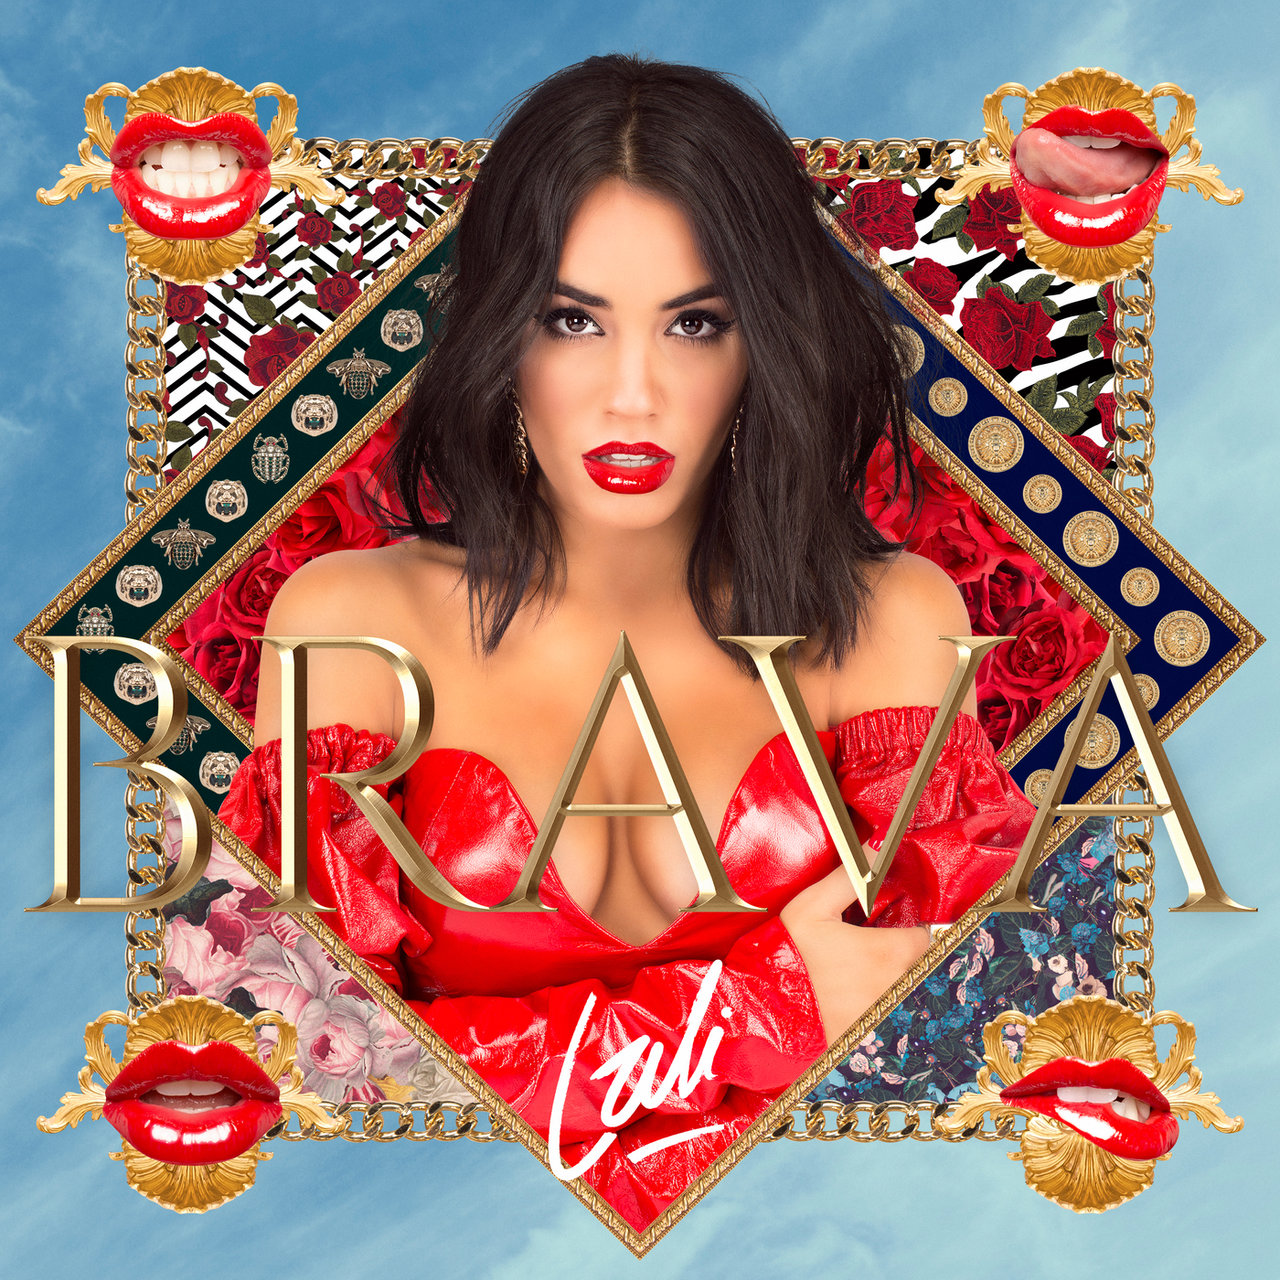 Lali — Brava cover artwork